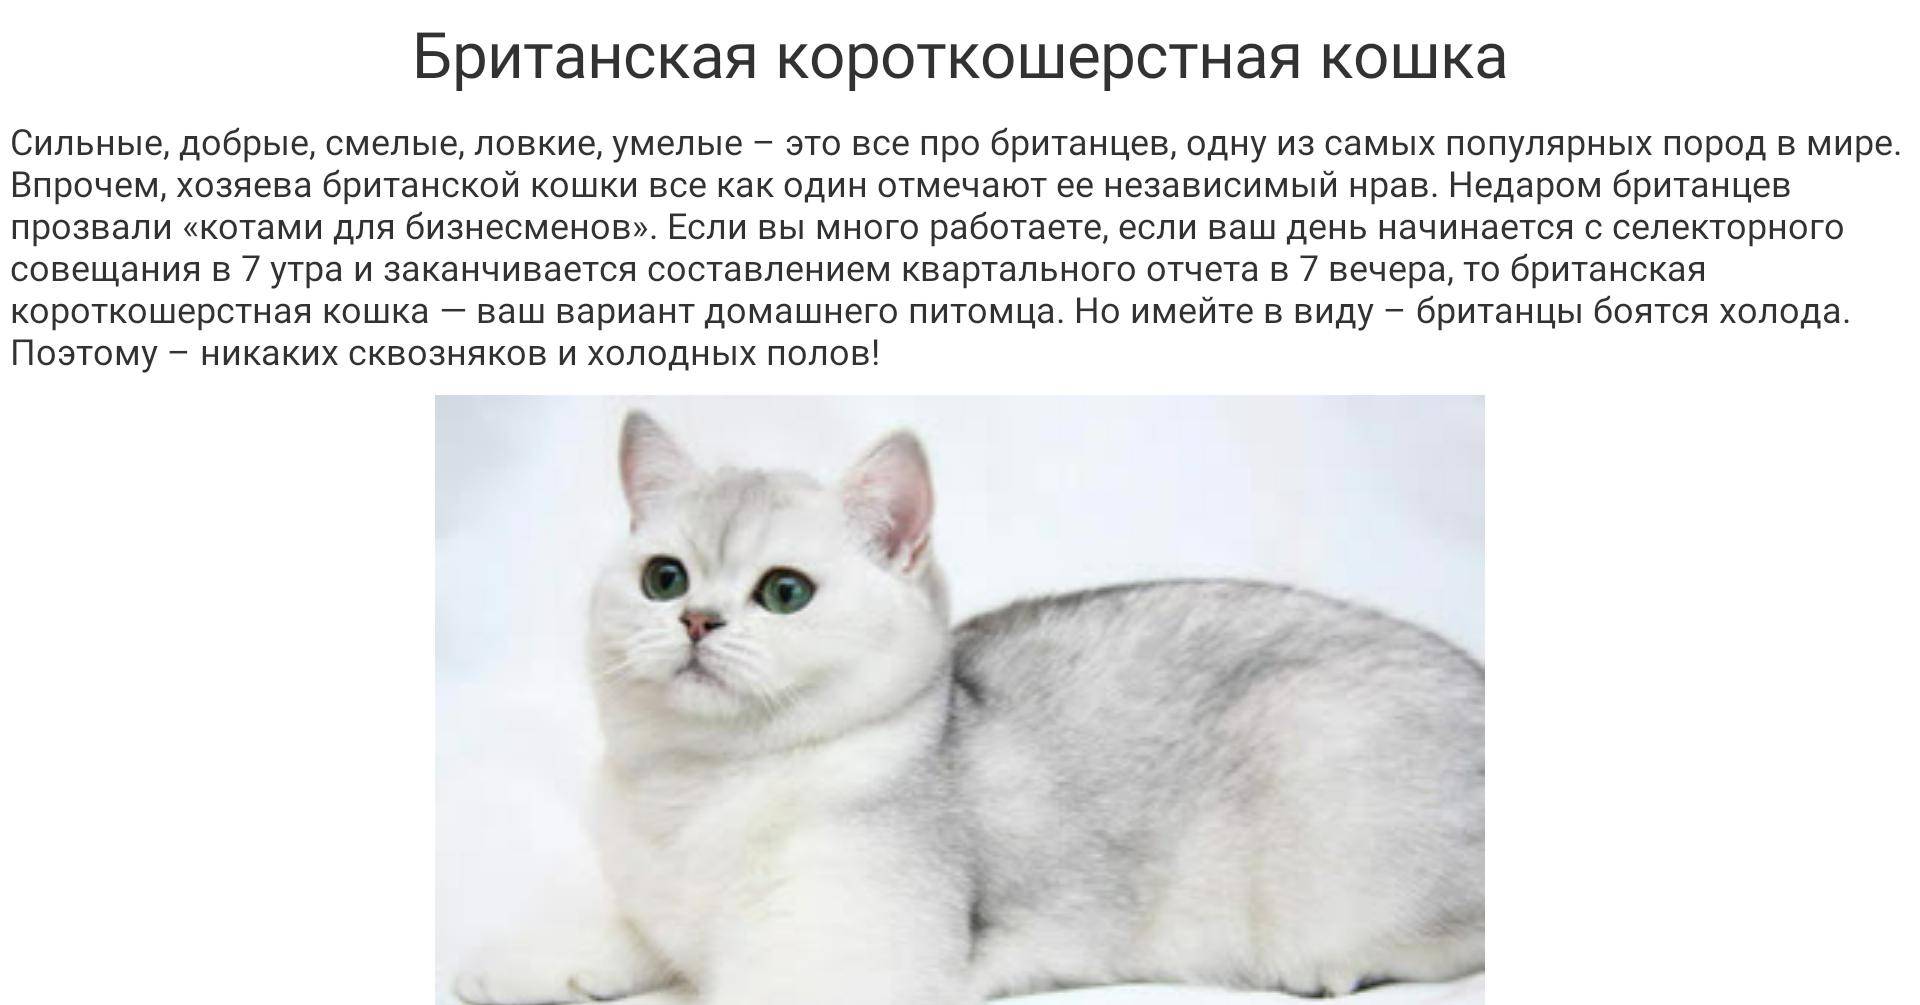 Русская голубая кошка – придворный крысолов. описание и фото русской голубой кошки